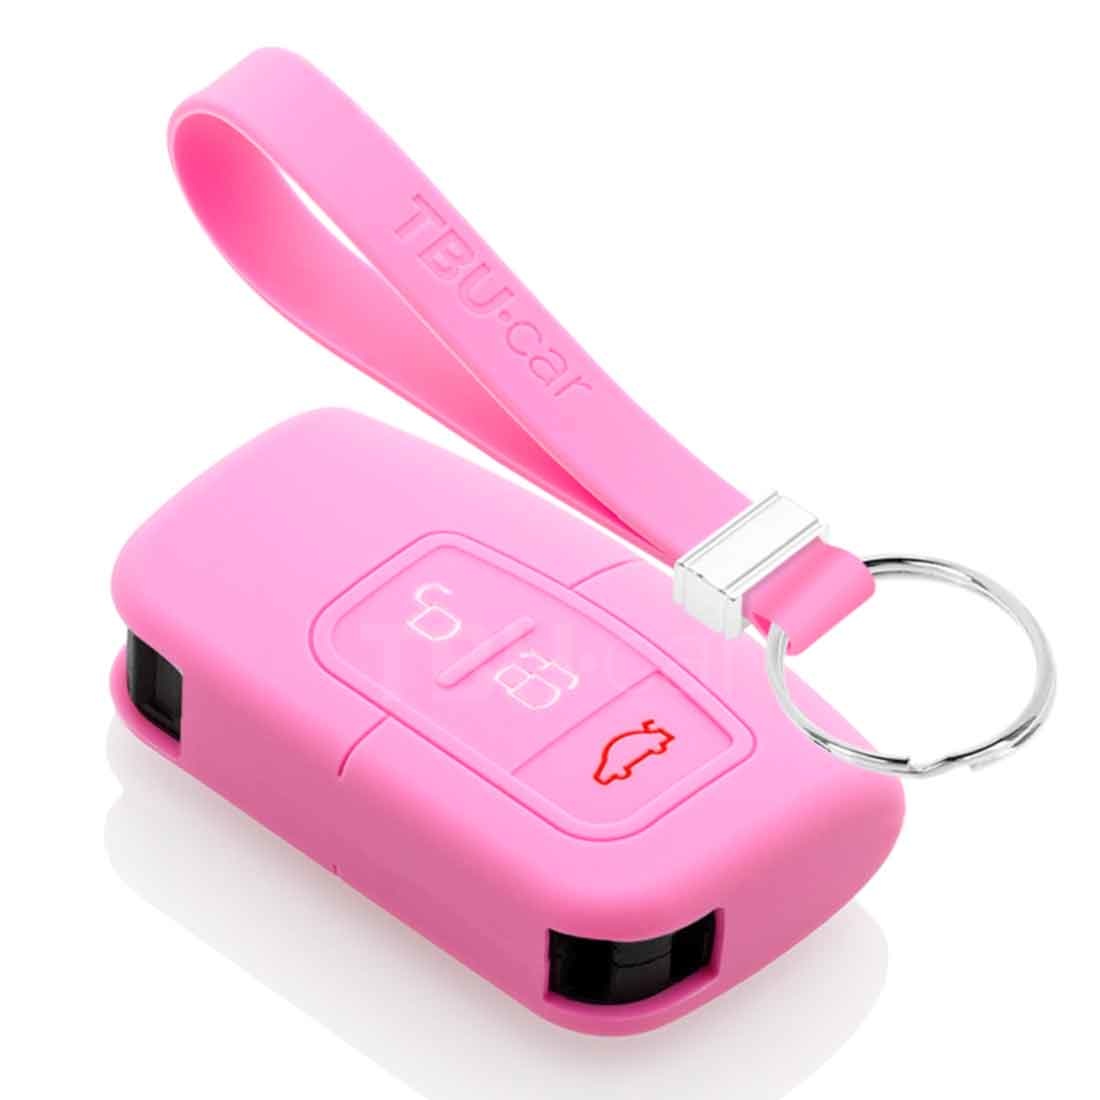 TBU car TBU car Sleutel cover compatibel met Ford - Silicone sleutelhoesje - beschermhoesje autosleutel - Roze